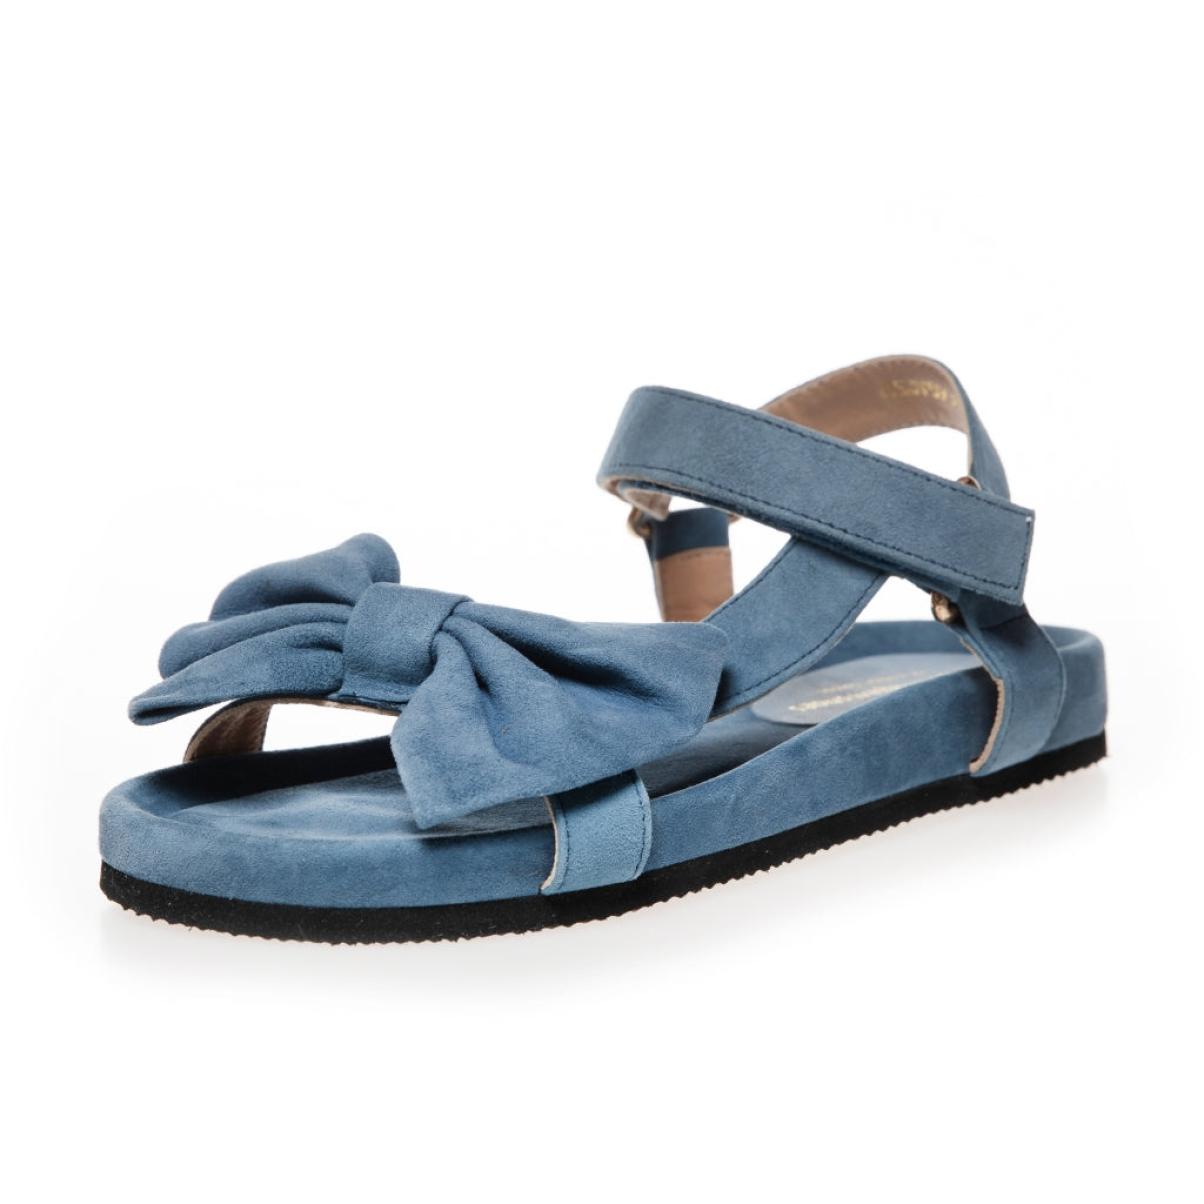 Copenhagen Shoes Trending Sky And Diamonds 23 Suede - Denim Blue Sandals Women - 2